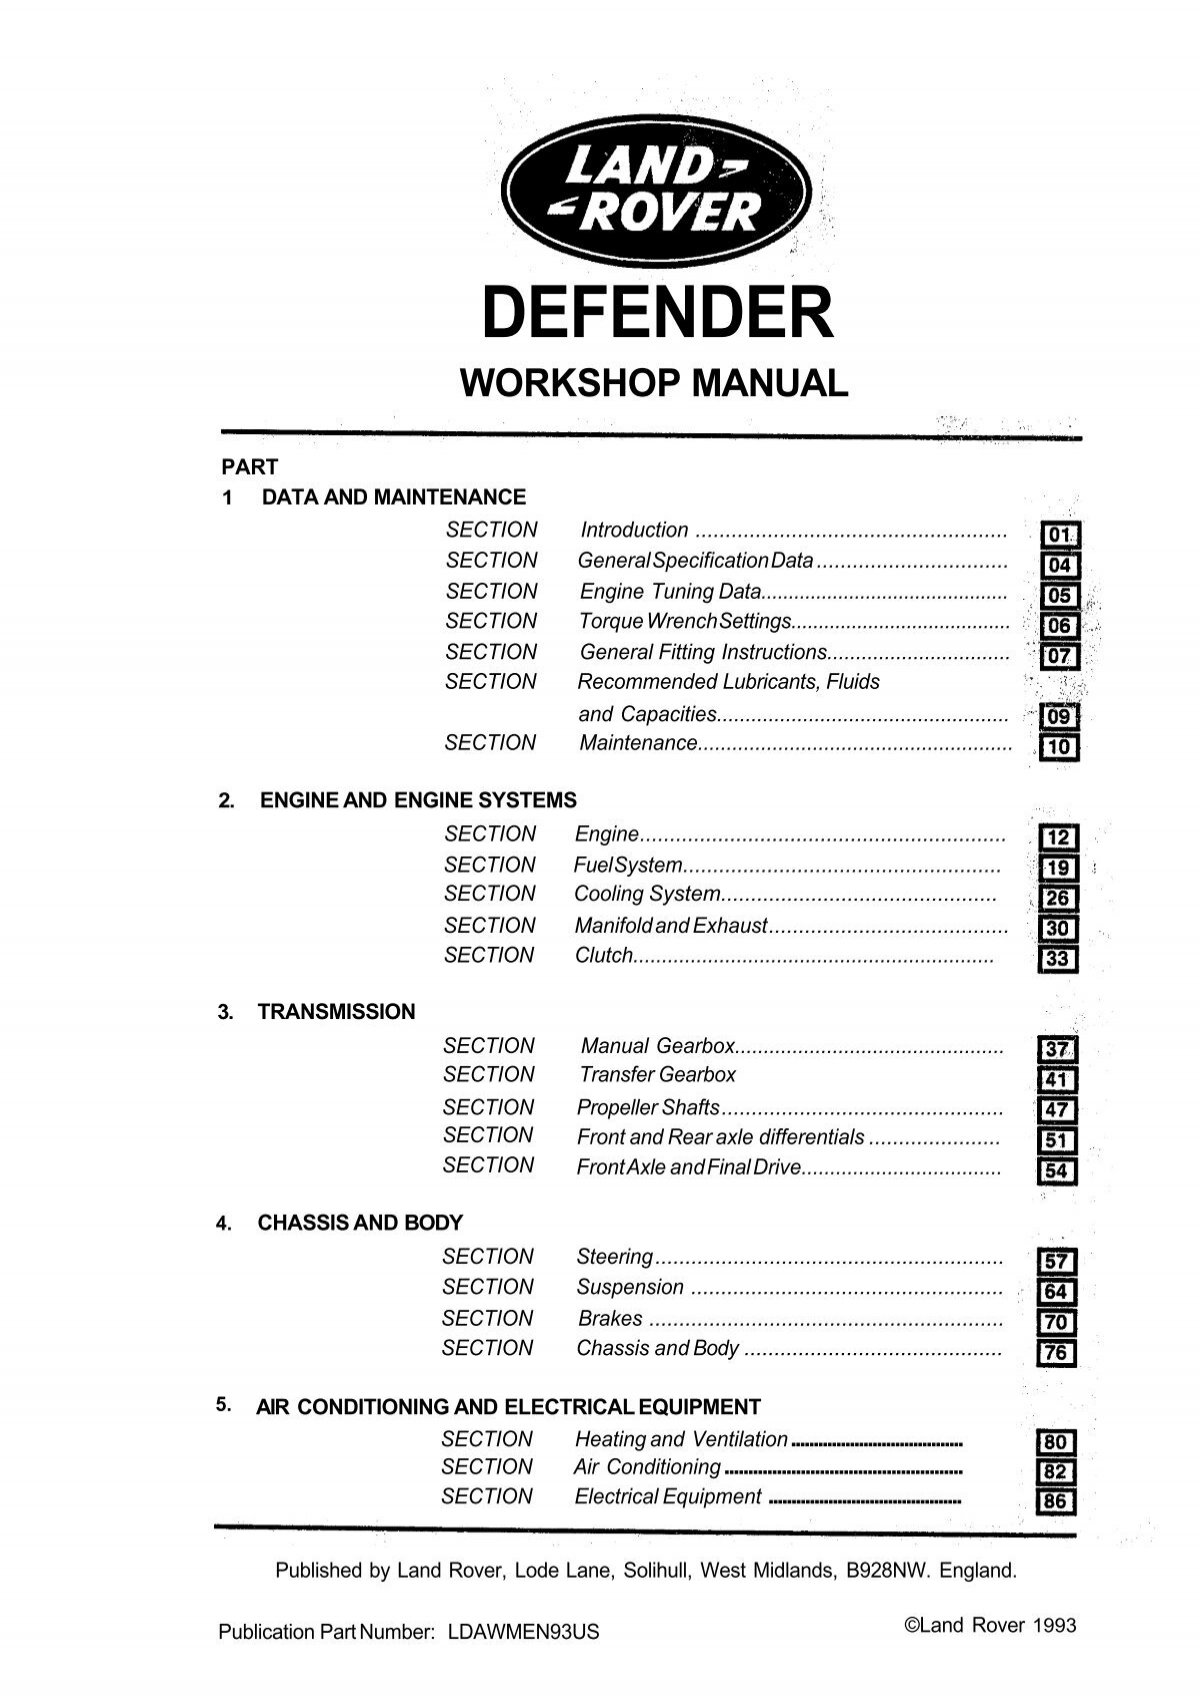 Defender Workshop Manual (1993). - Internet-Tools.co.uk